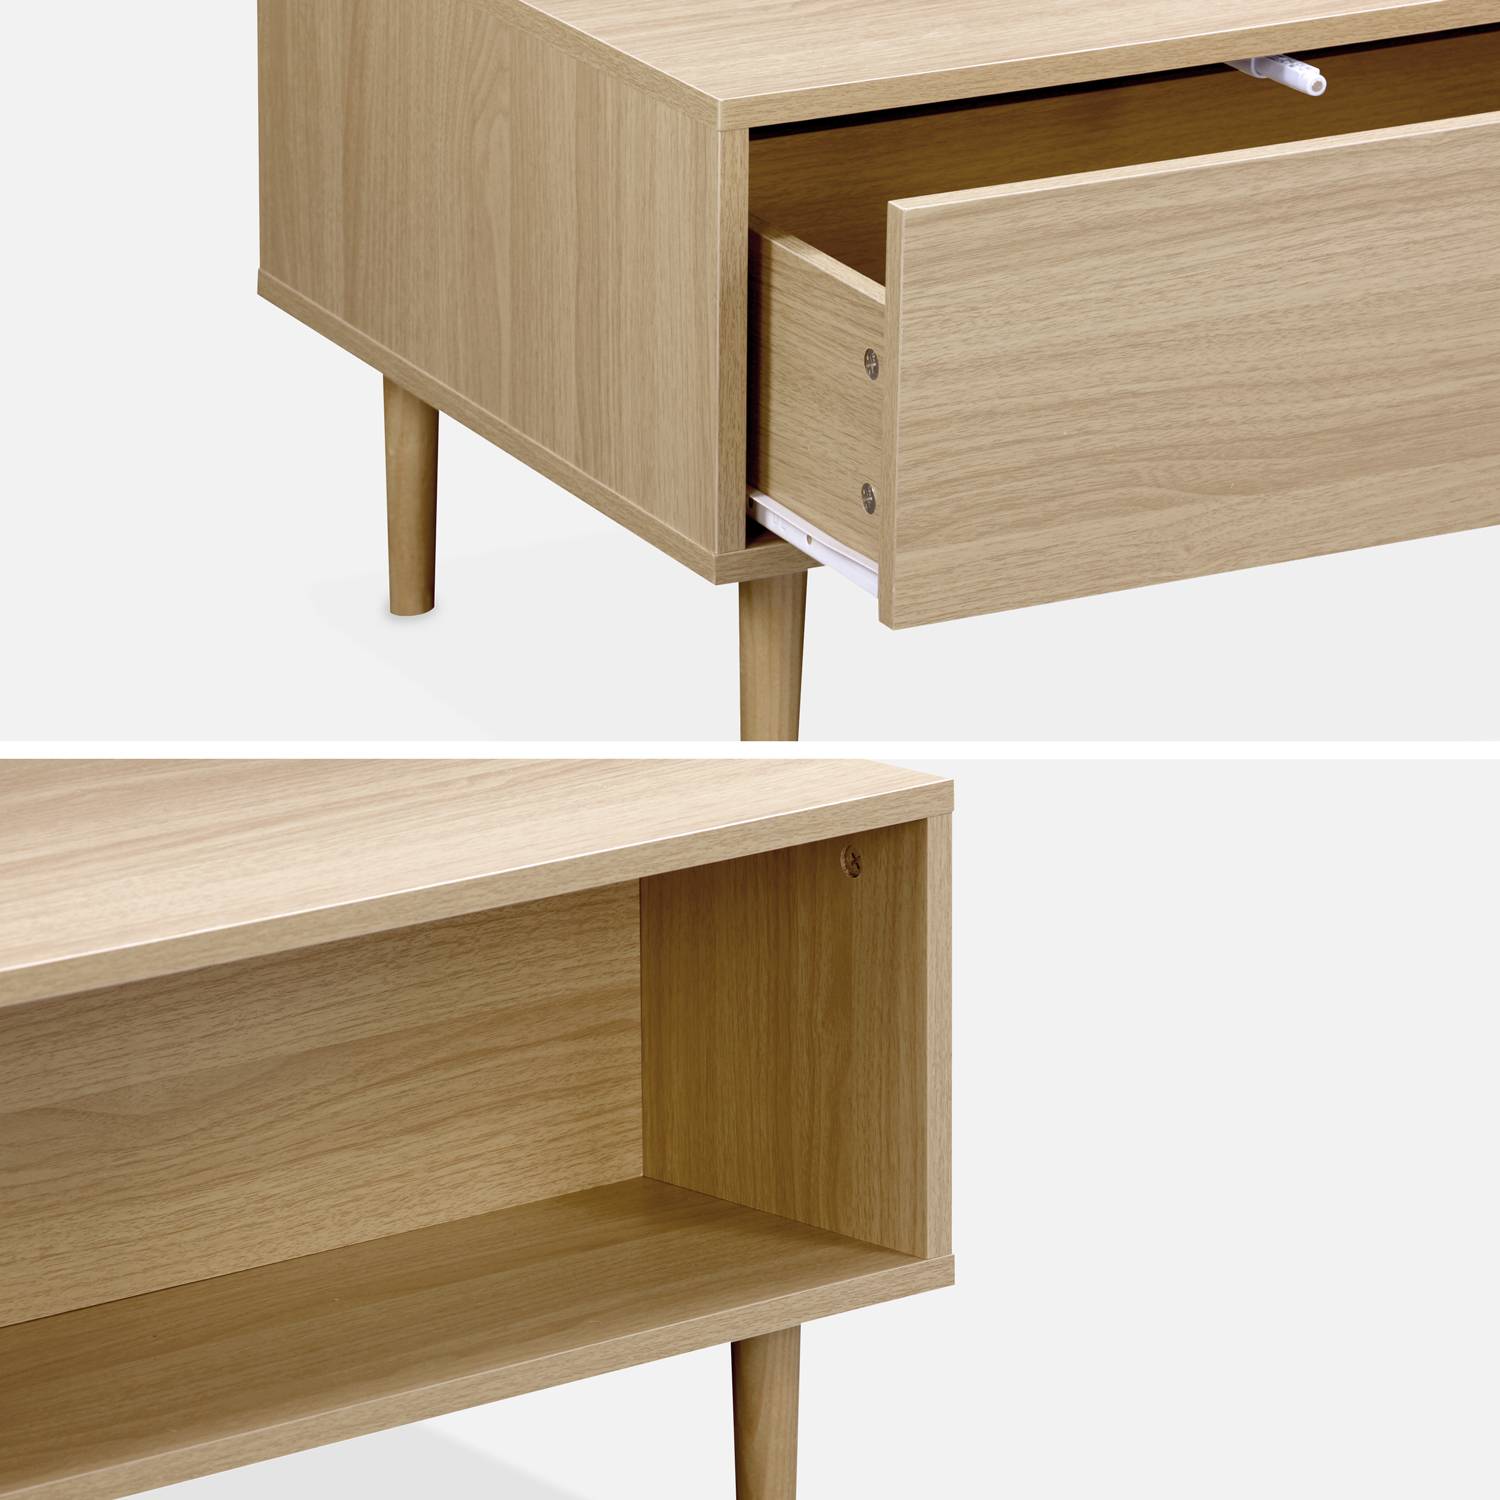 Table basse en décor bois - Mika - 2 tiroirs, 2 espaces de rangement, L 120 x l 55 x H 40cm,sweeek,Photo6